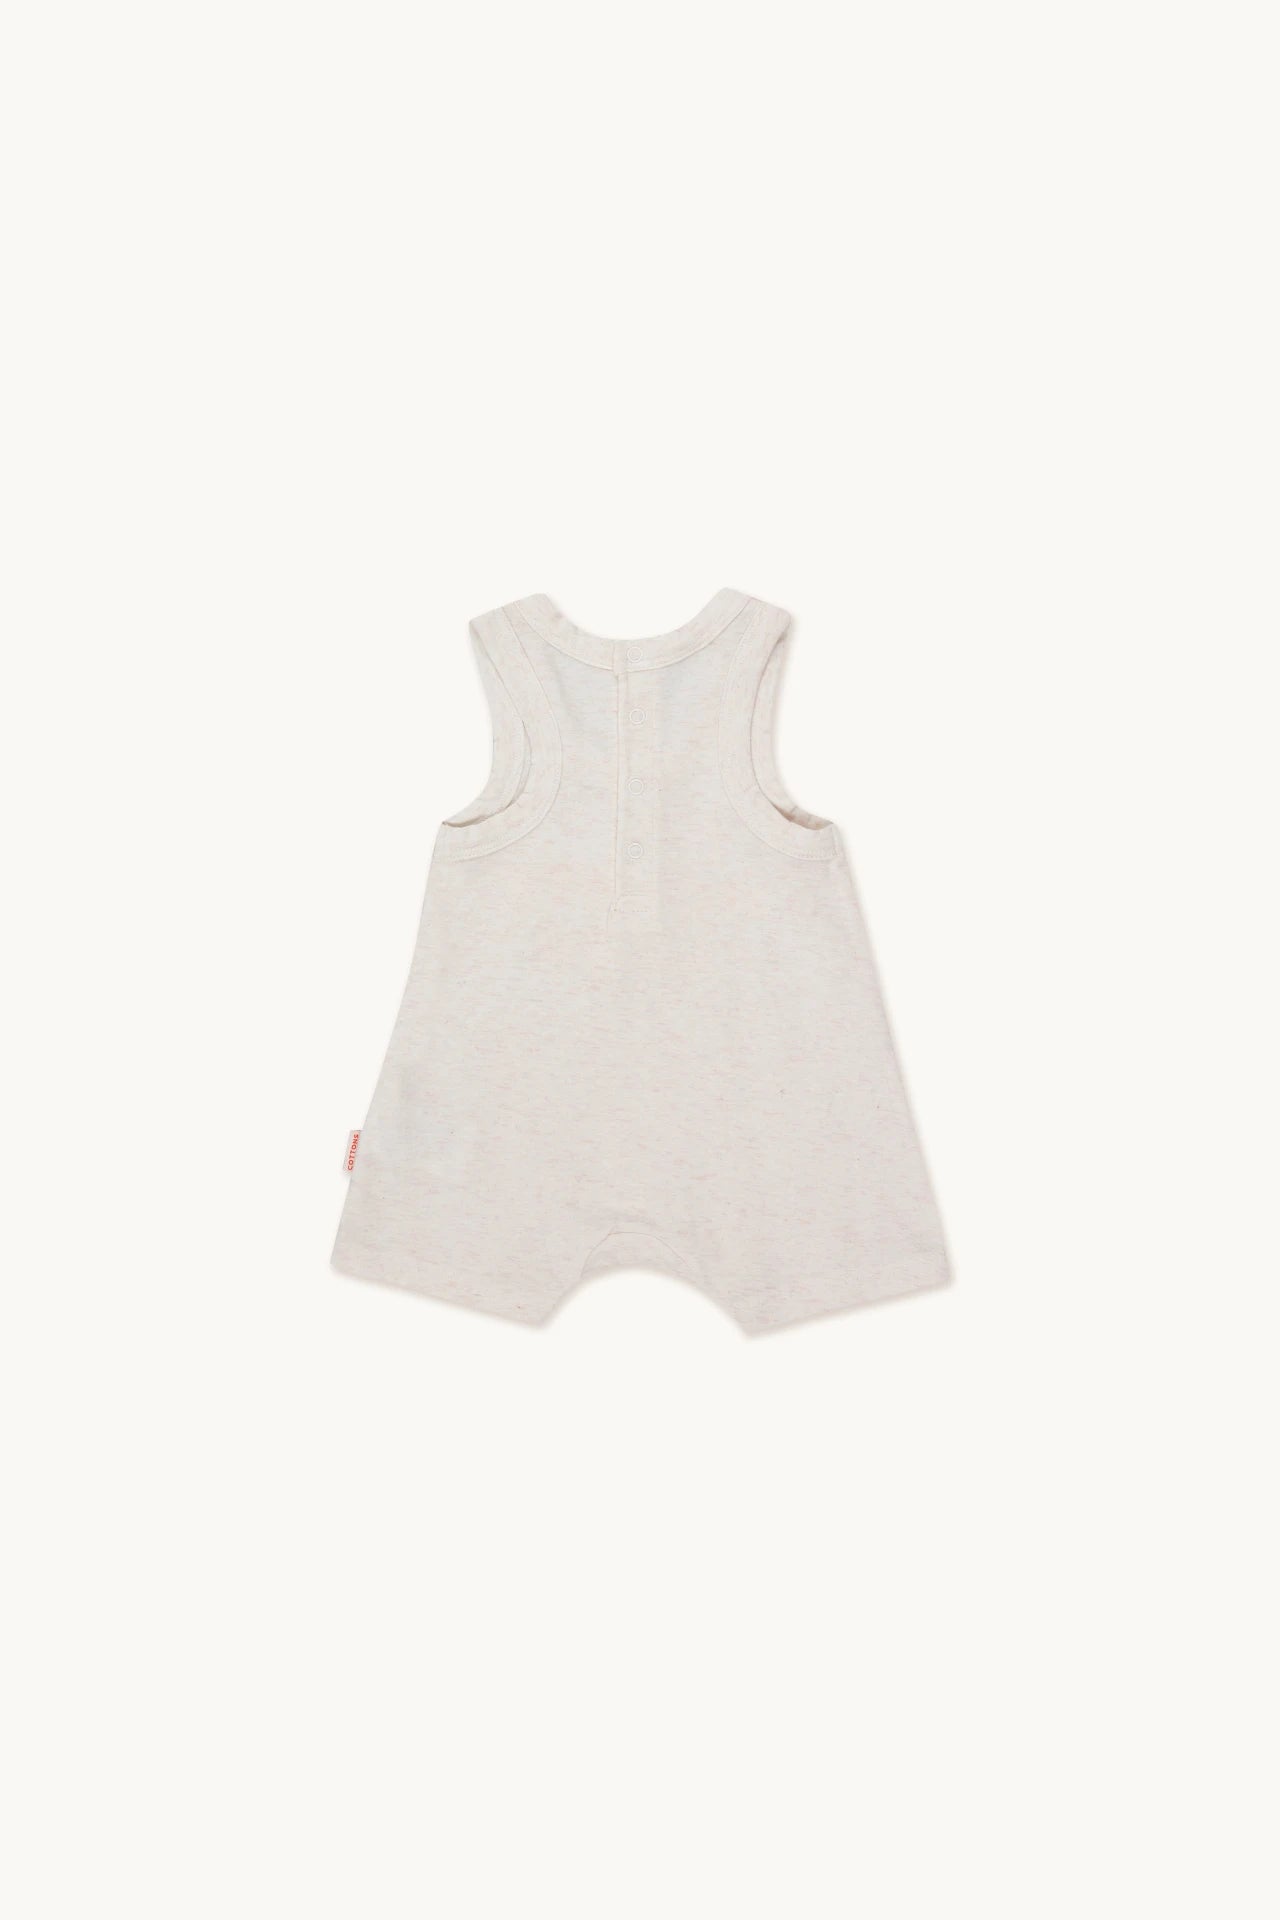 Tiny Cottons - Wonderland short jumpsuit